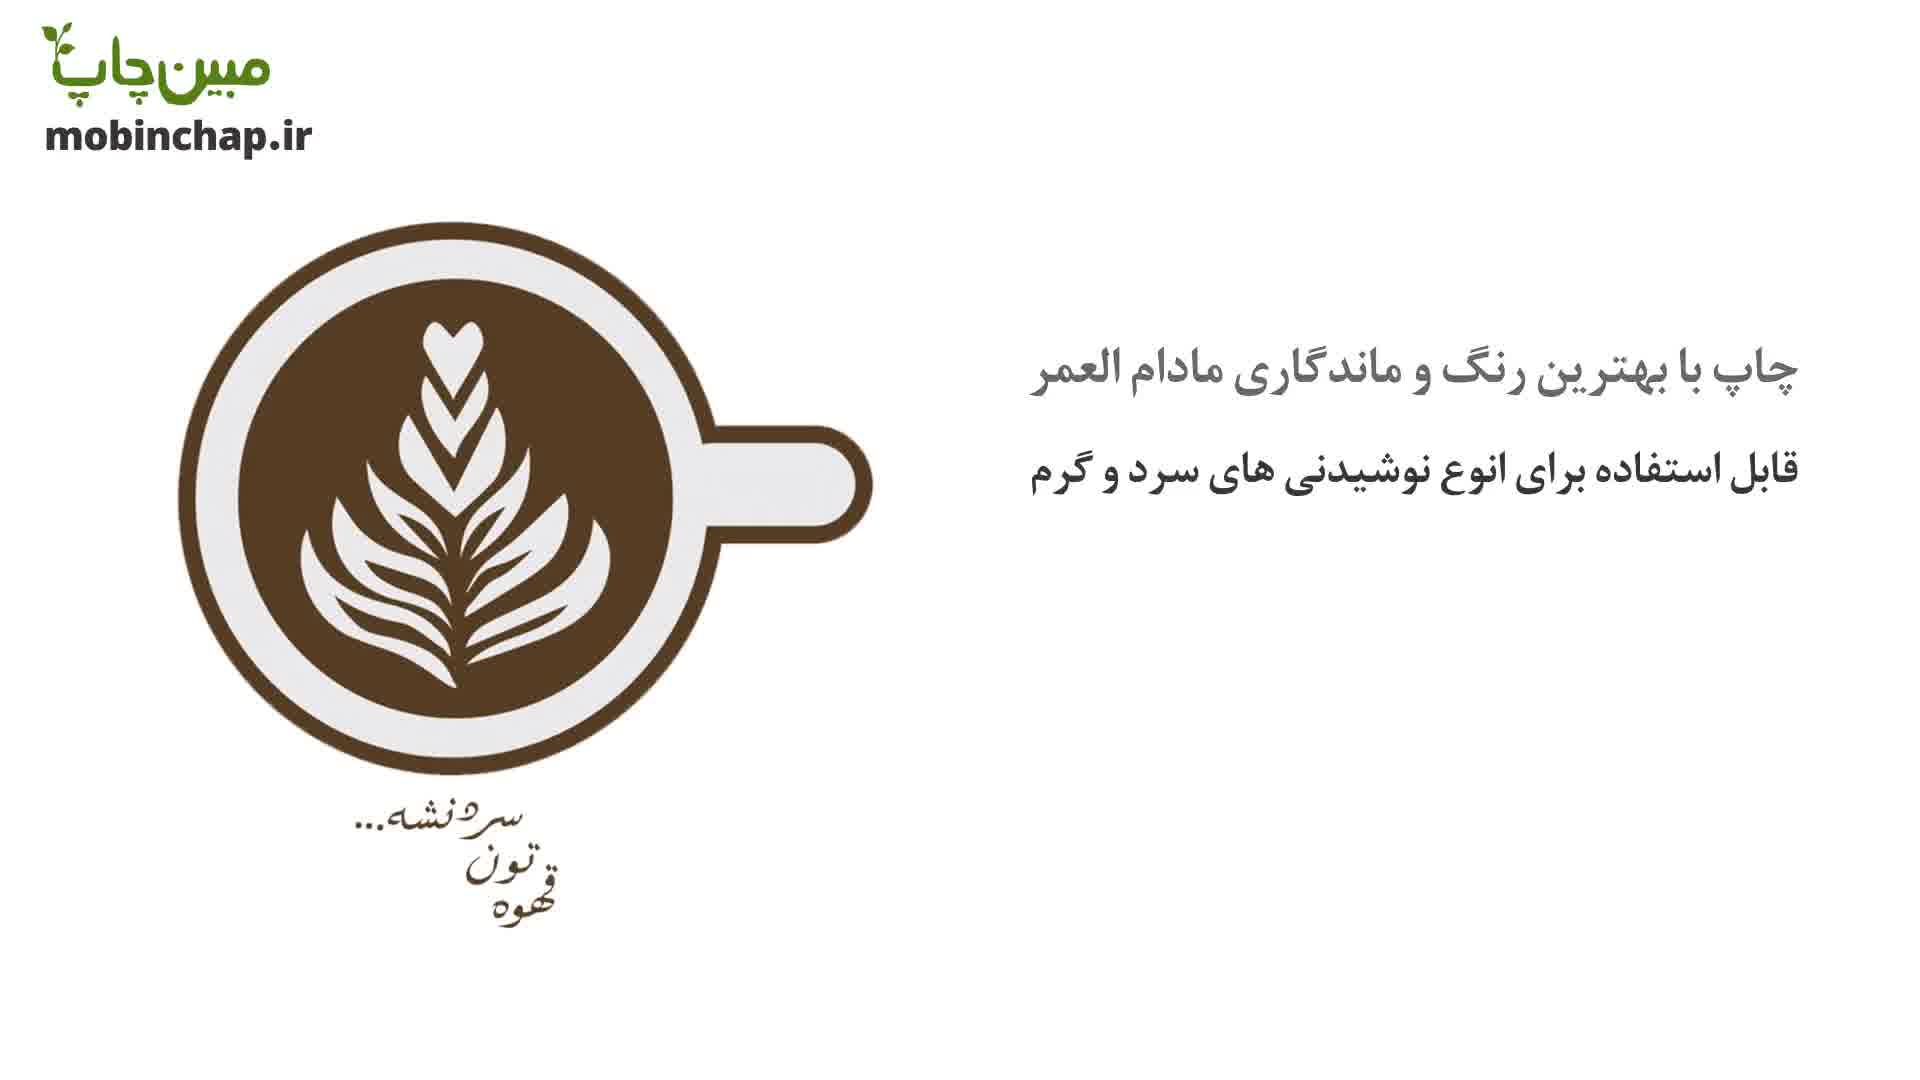 خرید ماگ برای قهوه و کافه از مبین چاپ